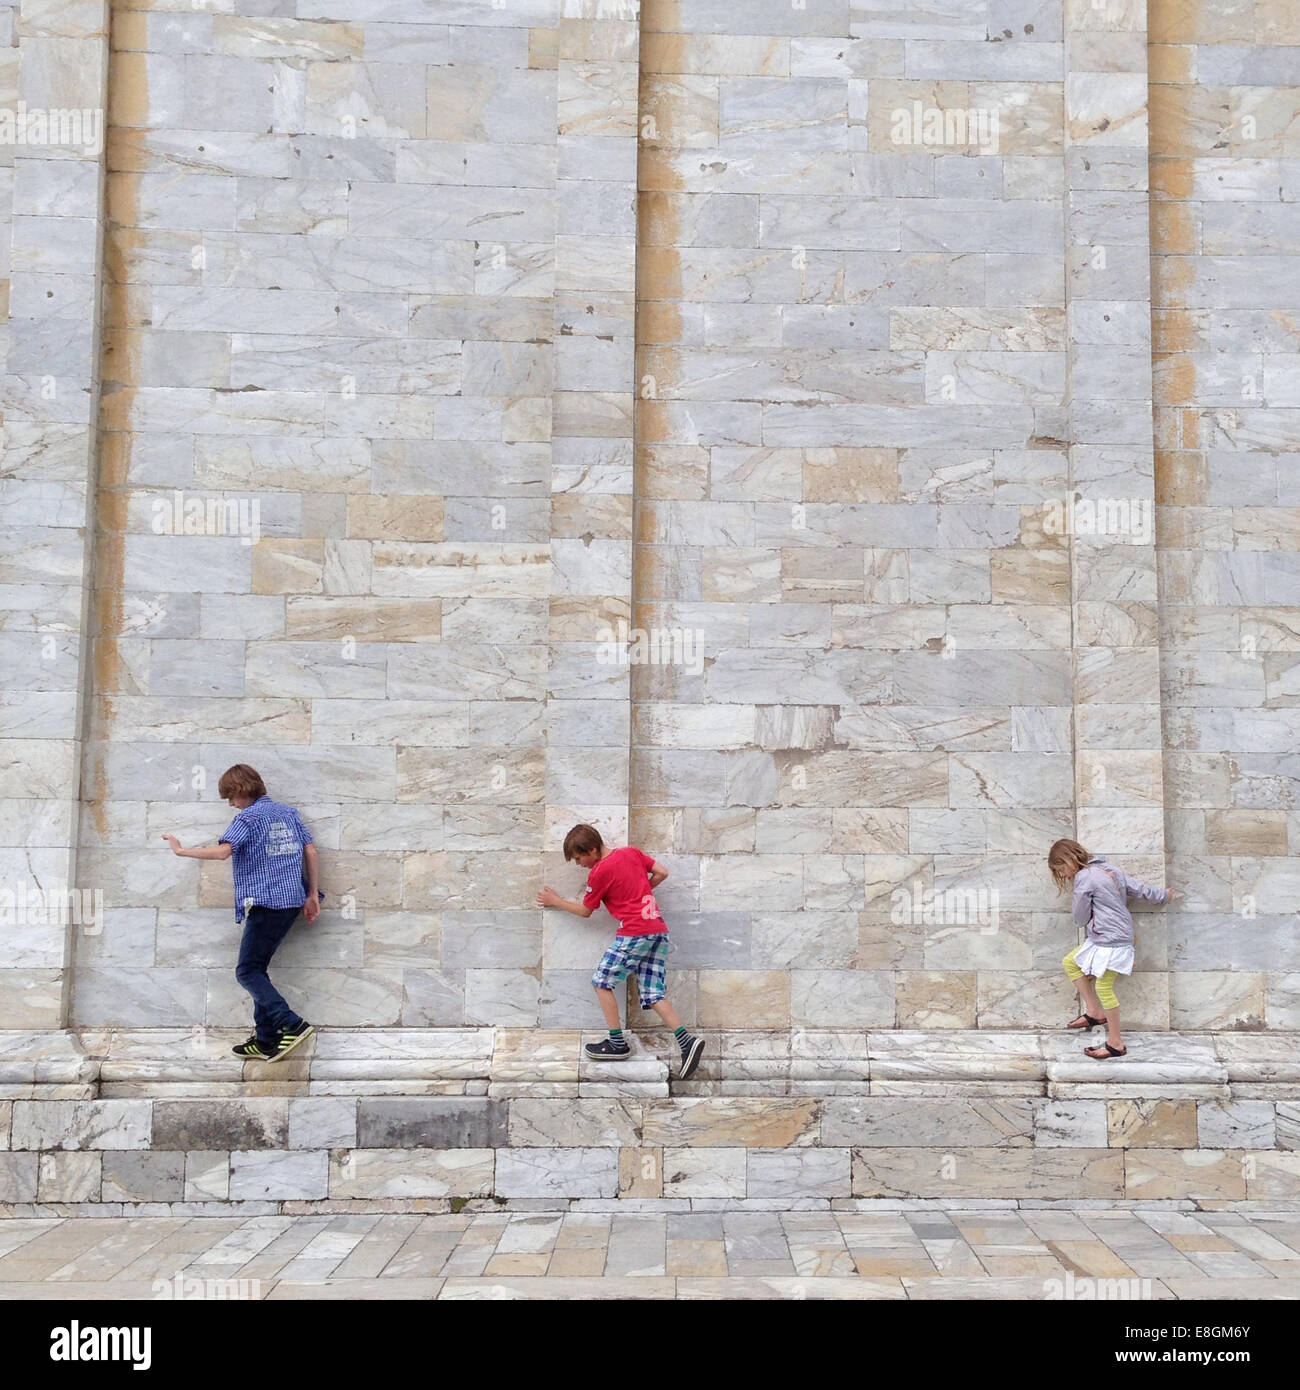 Three children walking along a brick wall, Pisa, Tuscany, italy Stock Photo